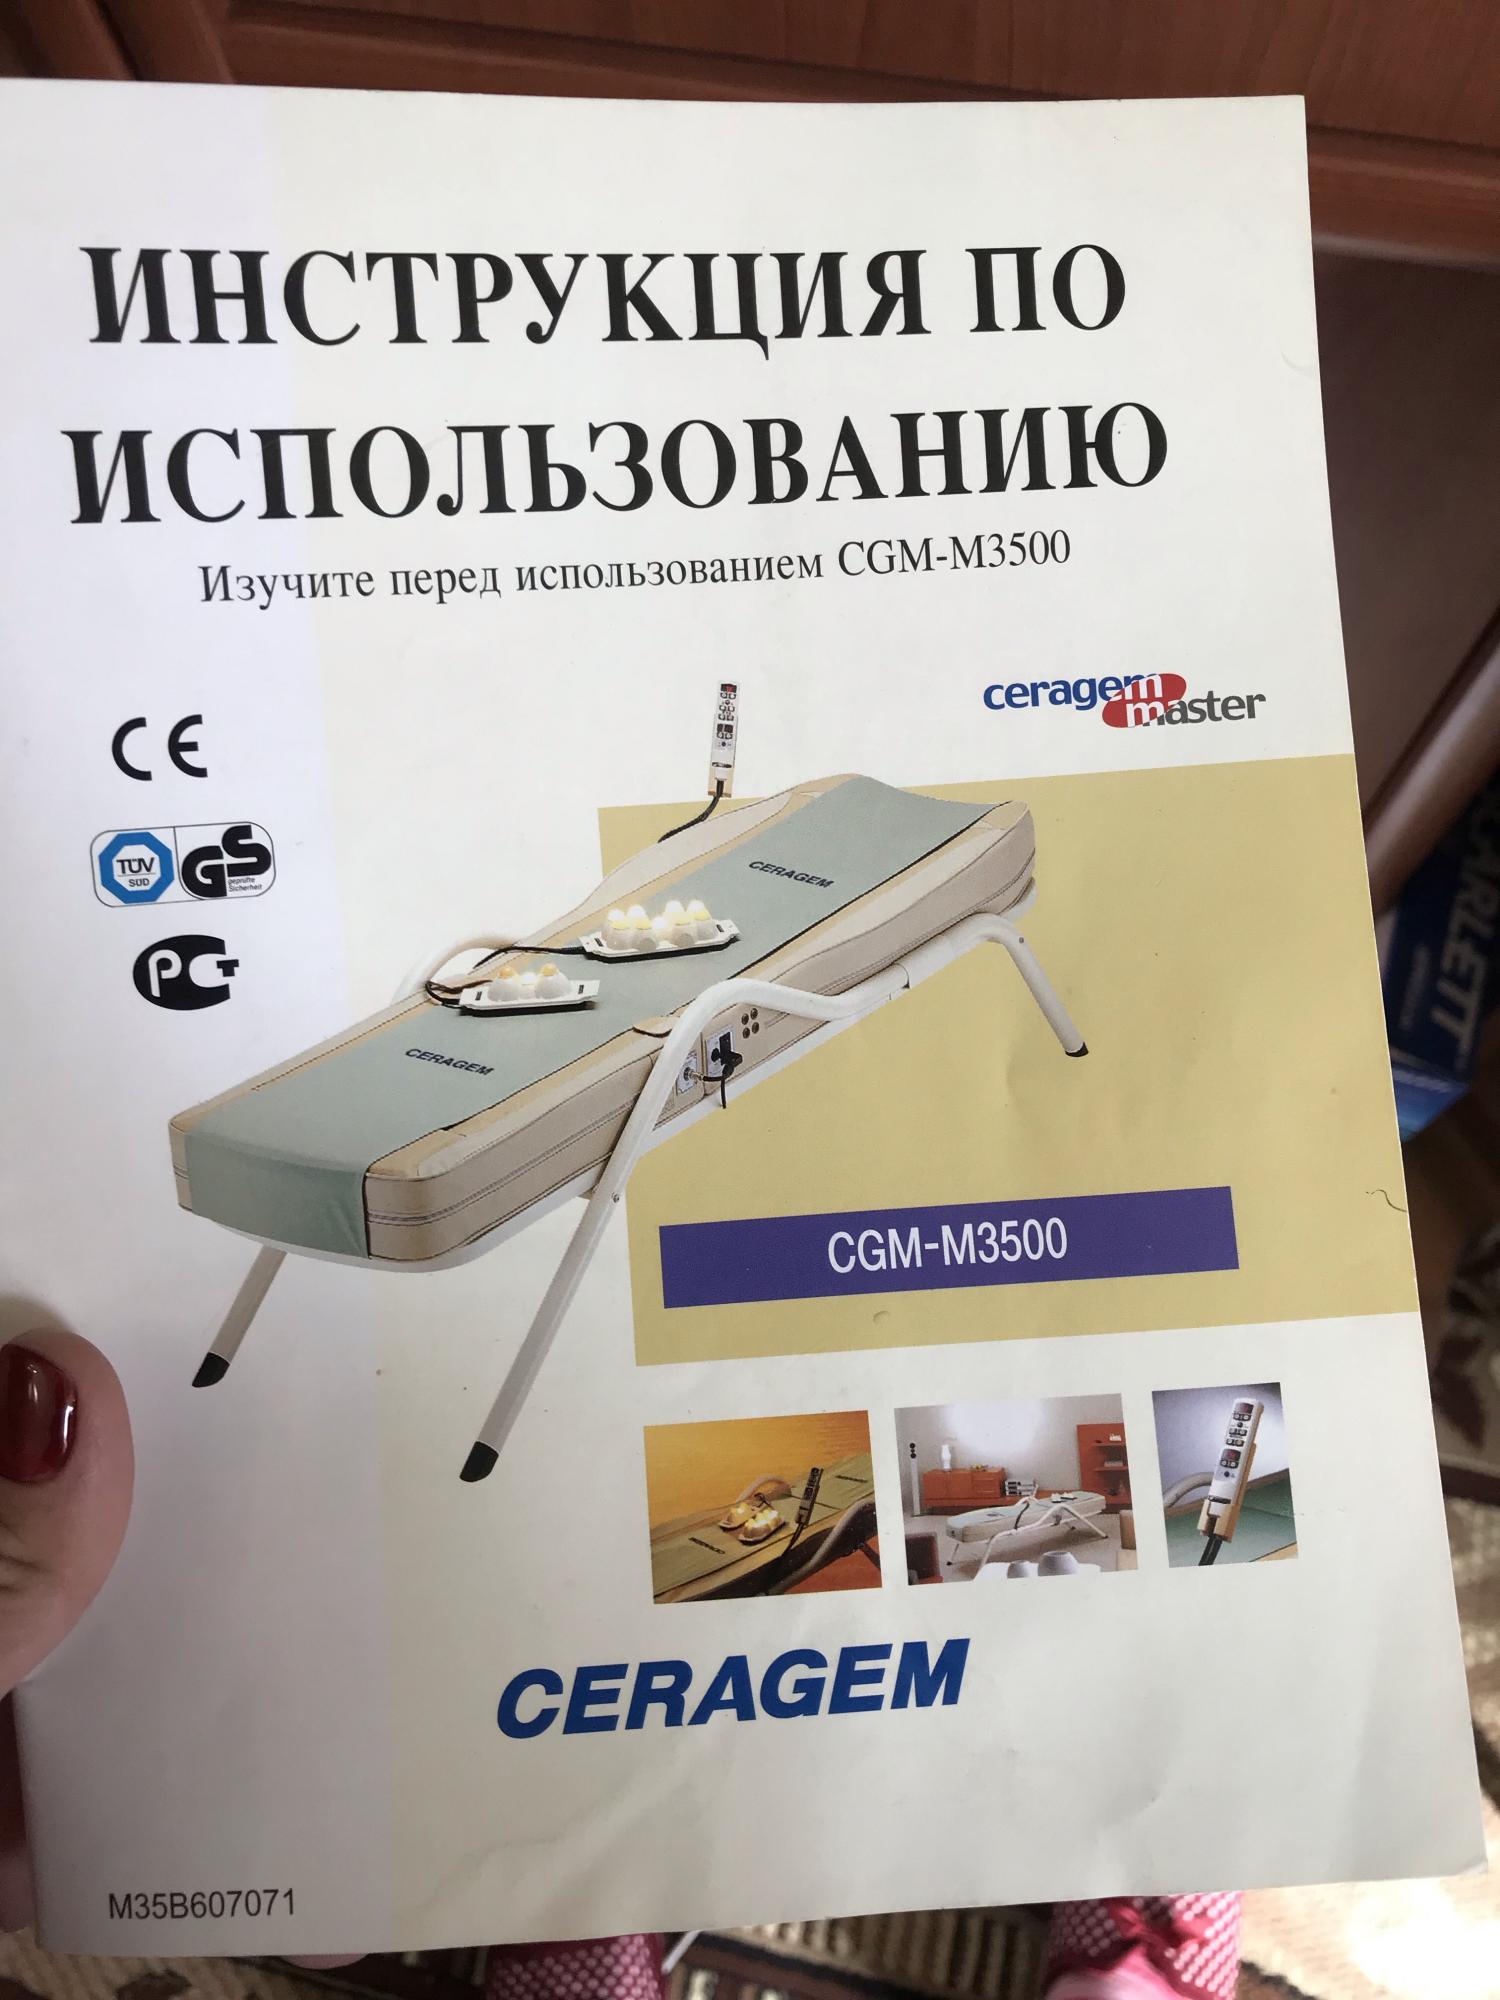 Кровать Ceragem CGM-m3500